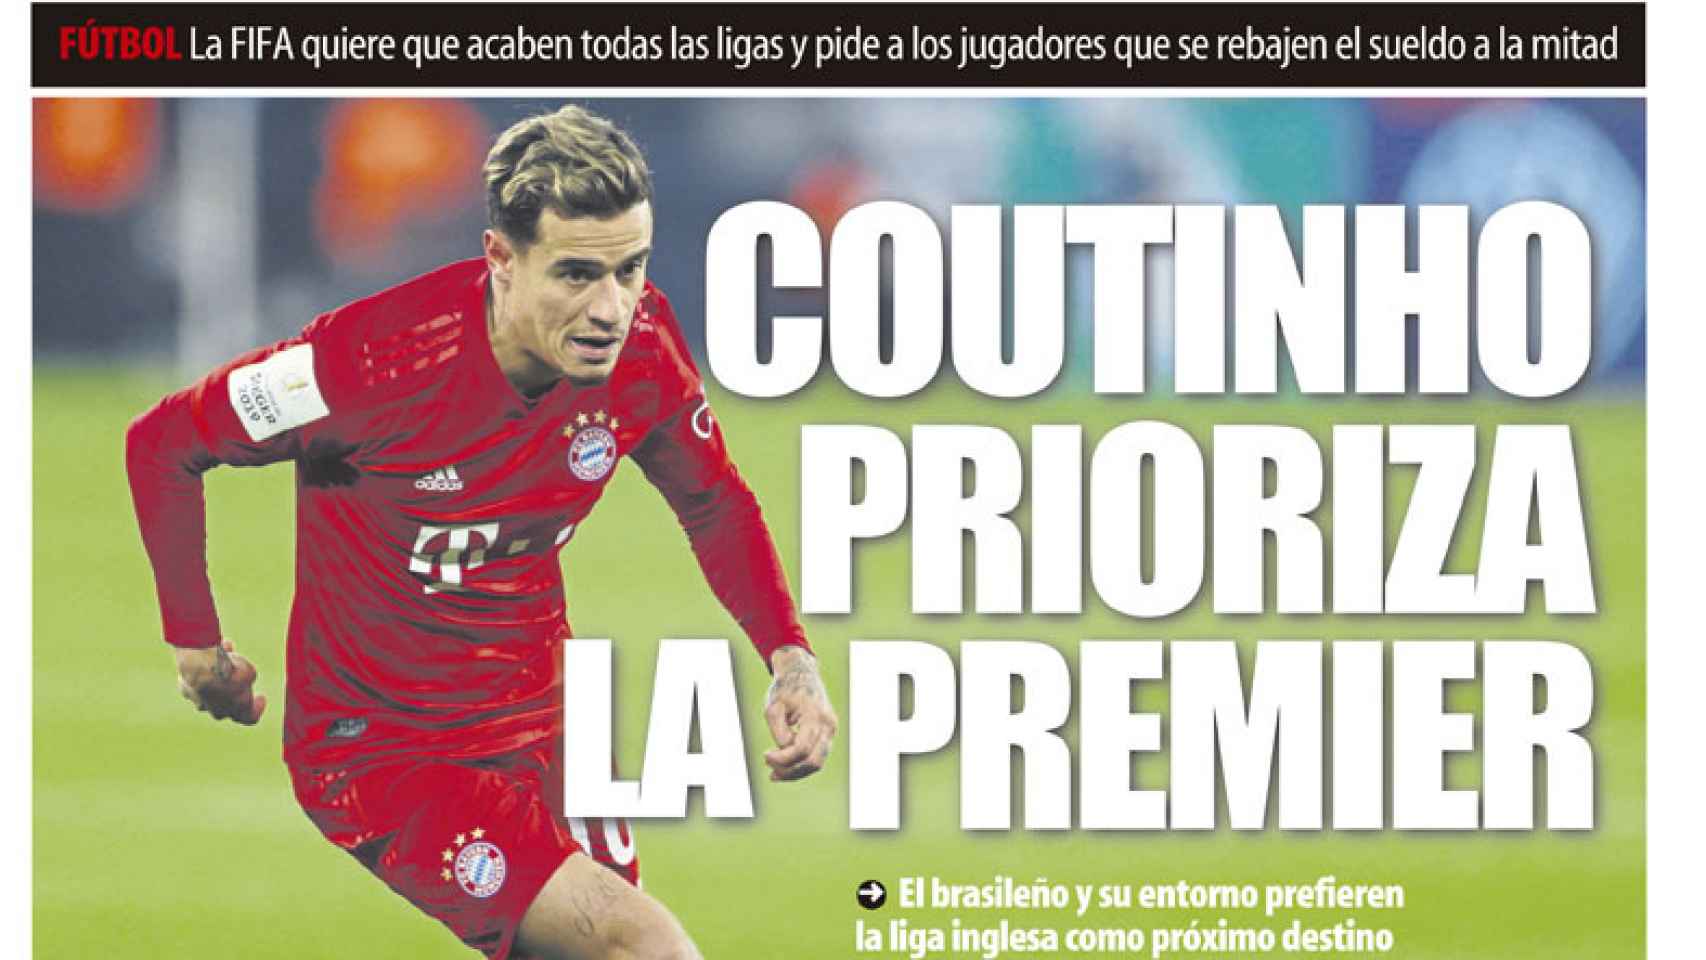 La portada del diario Mundo Deportivo (27/03/2020)